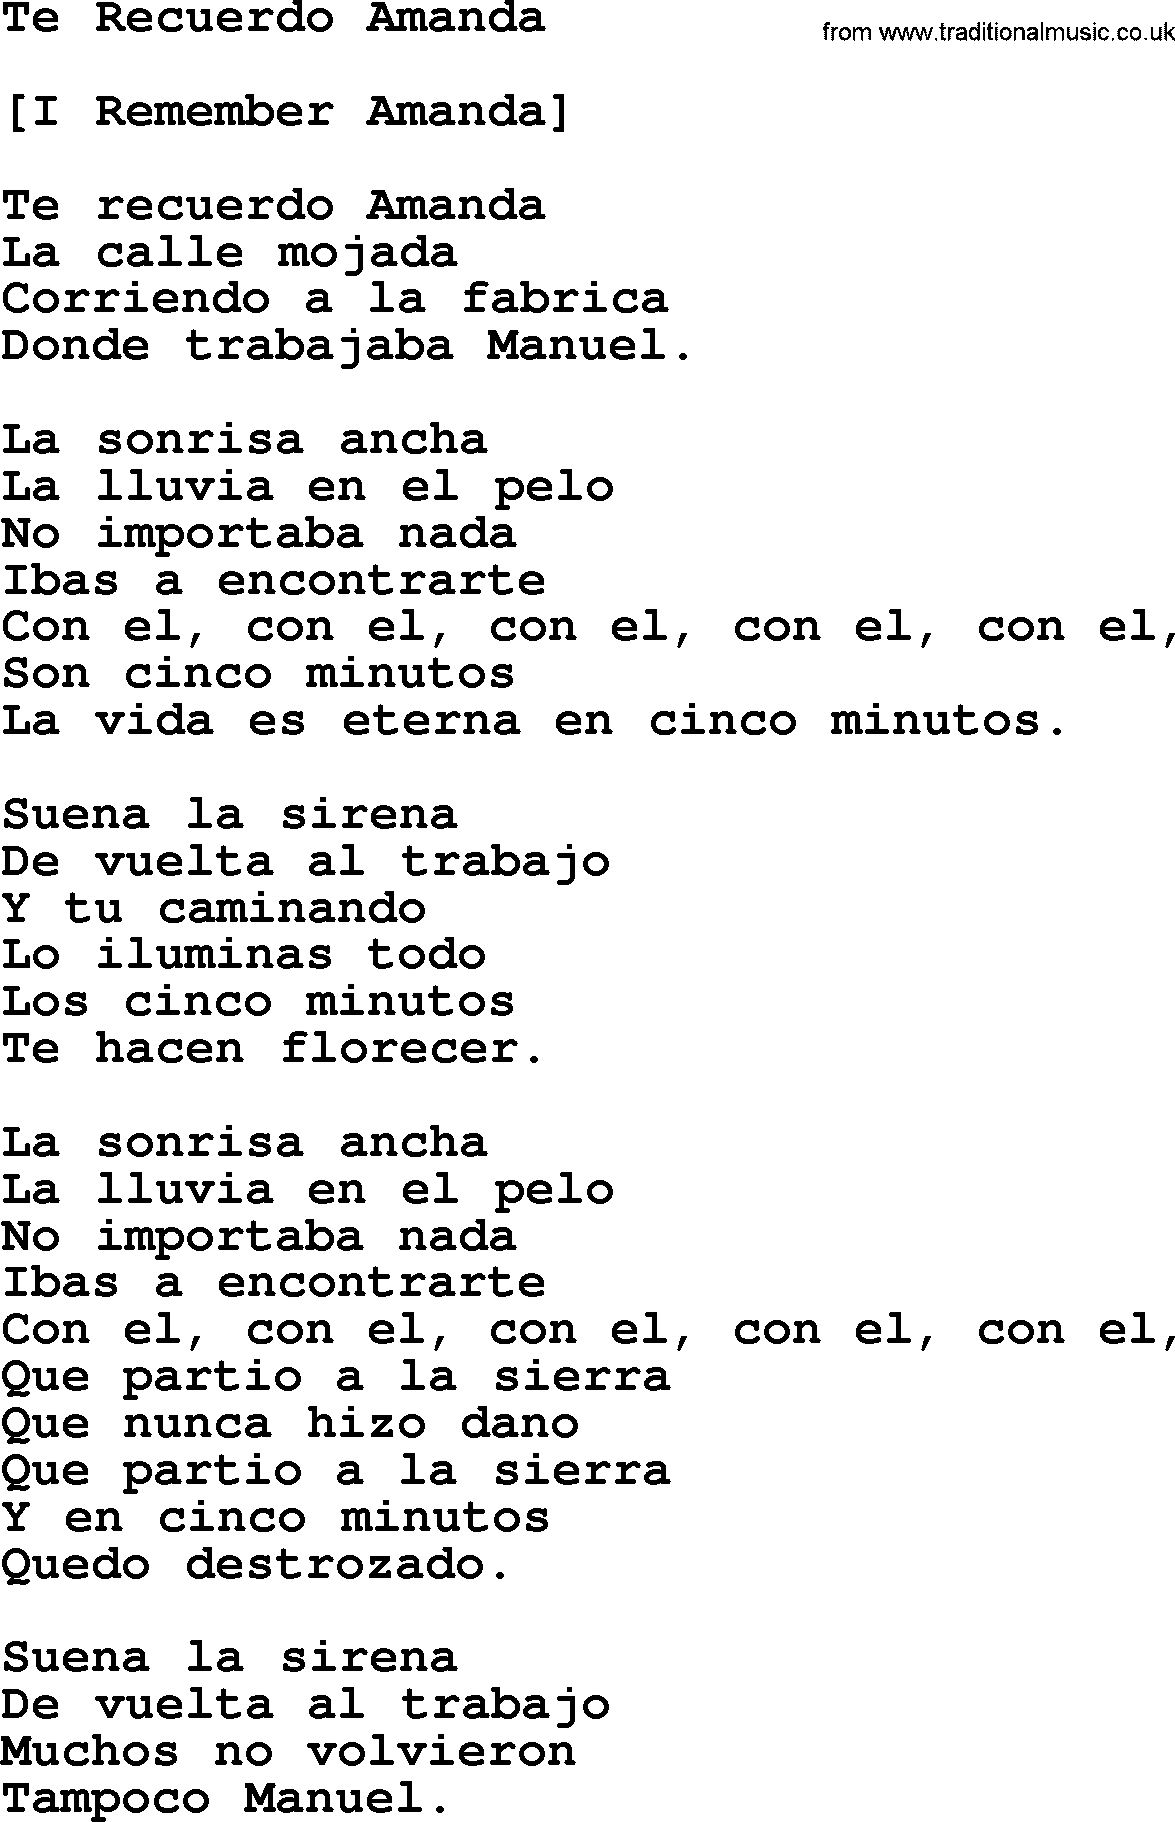 Joan Baez song Te Recuerdo Amanda, lyrics